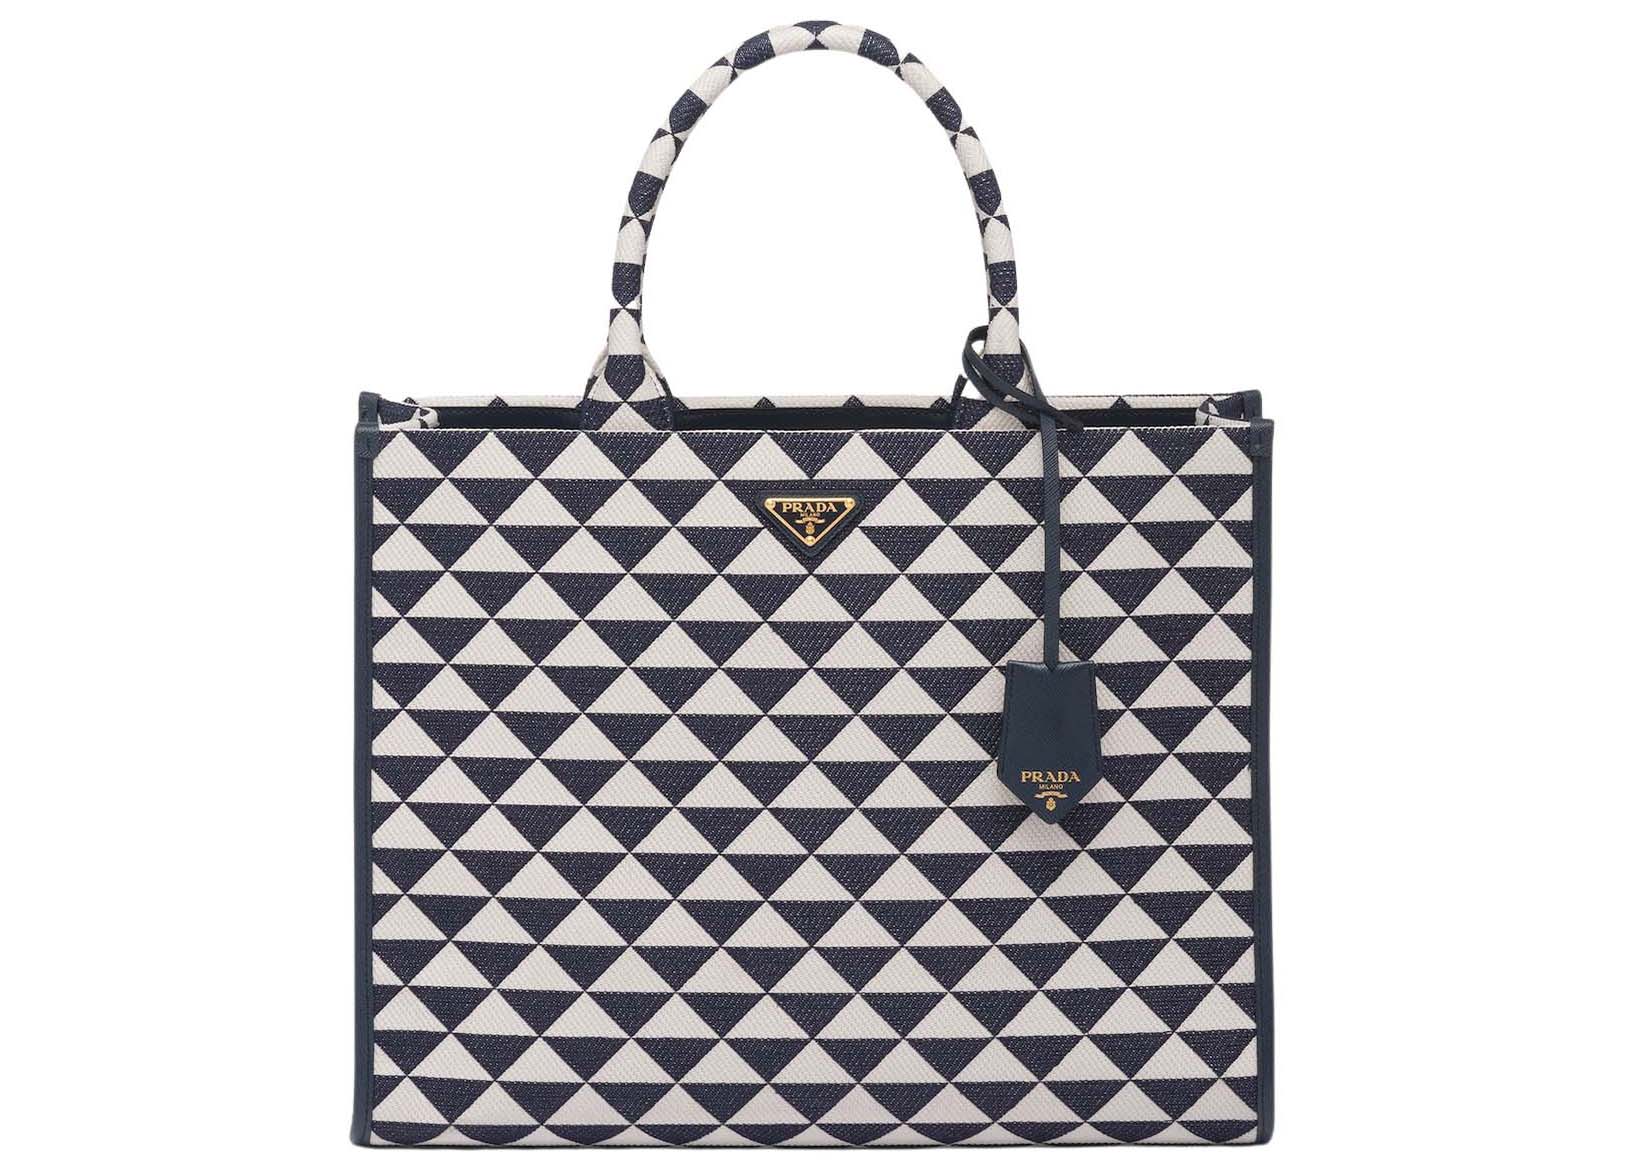 Prada Embroidered Bag Sale Online | website.jkuat.ac.ke